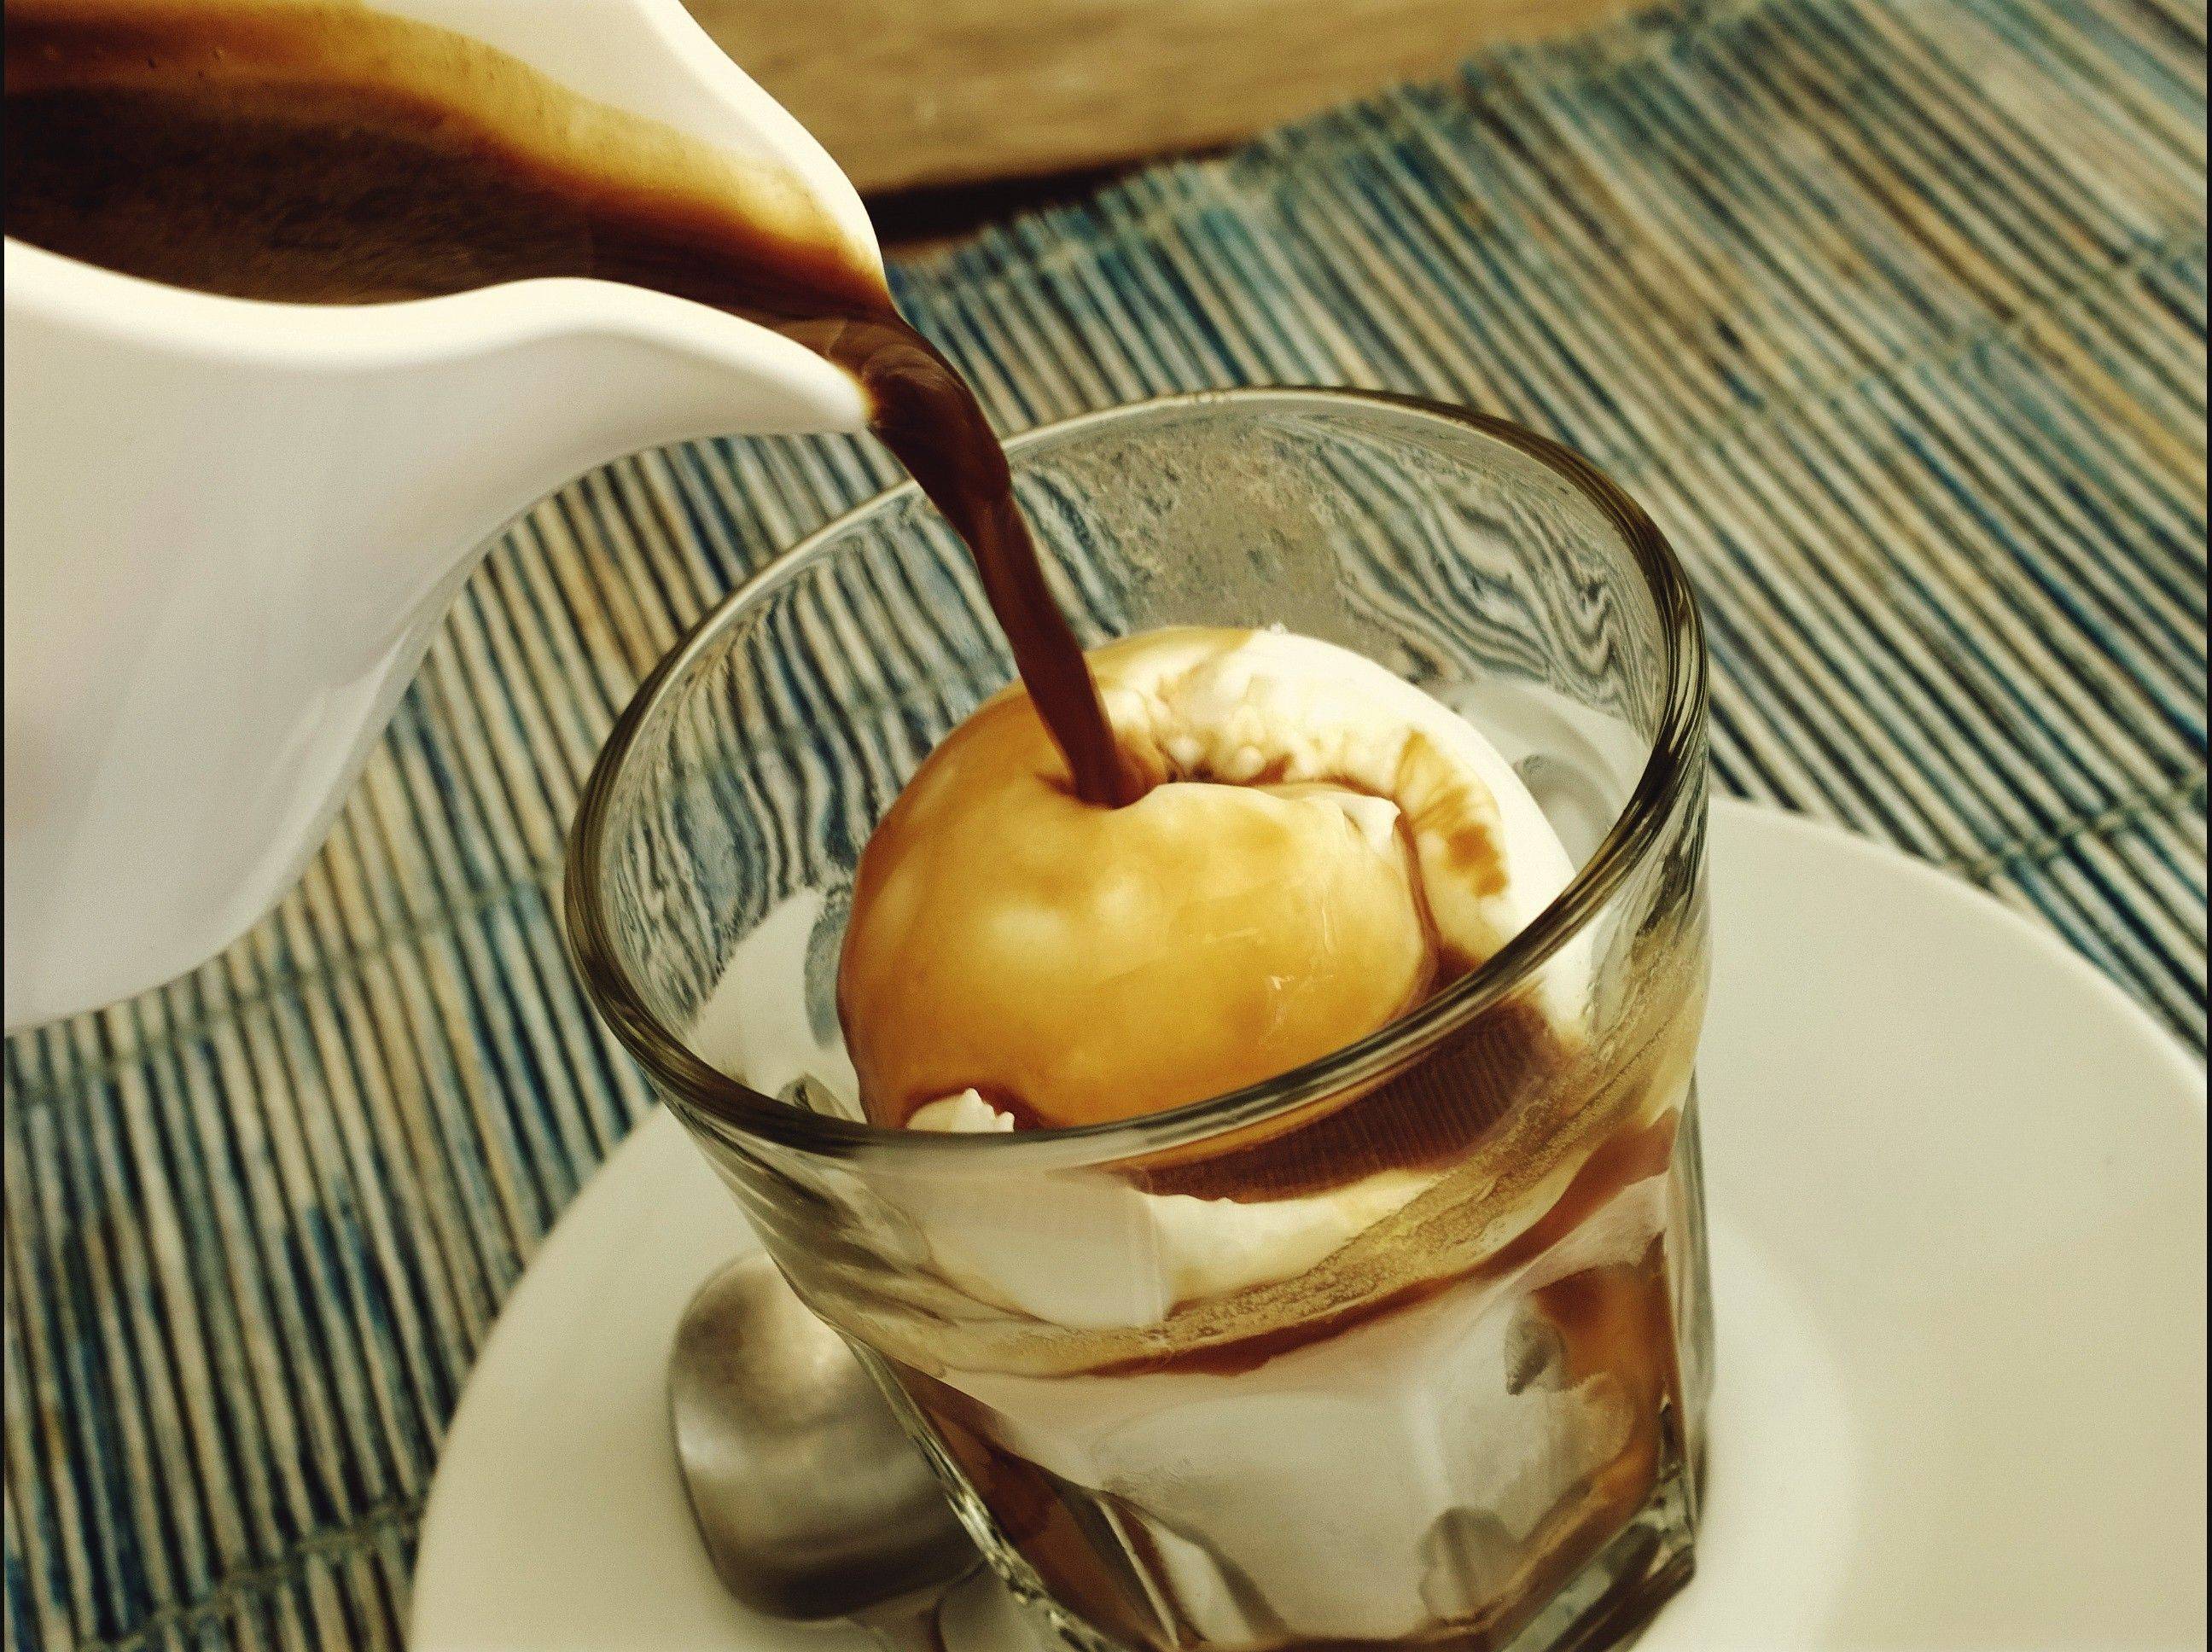 Кофе с мороженым рецепт приготовления с фото